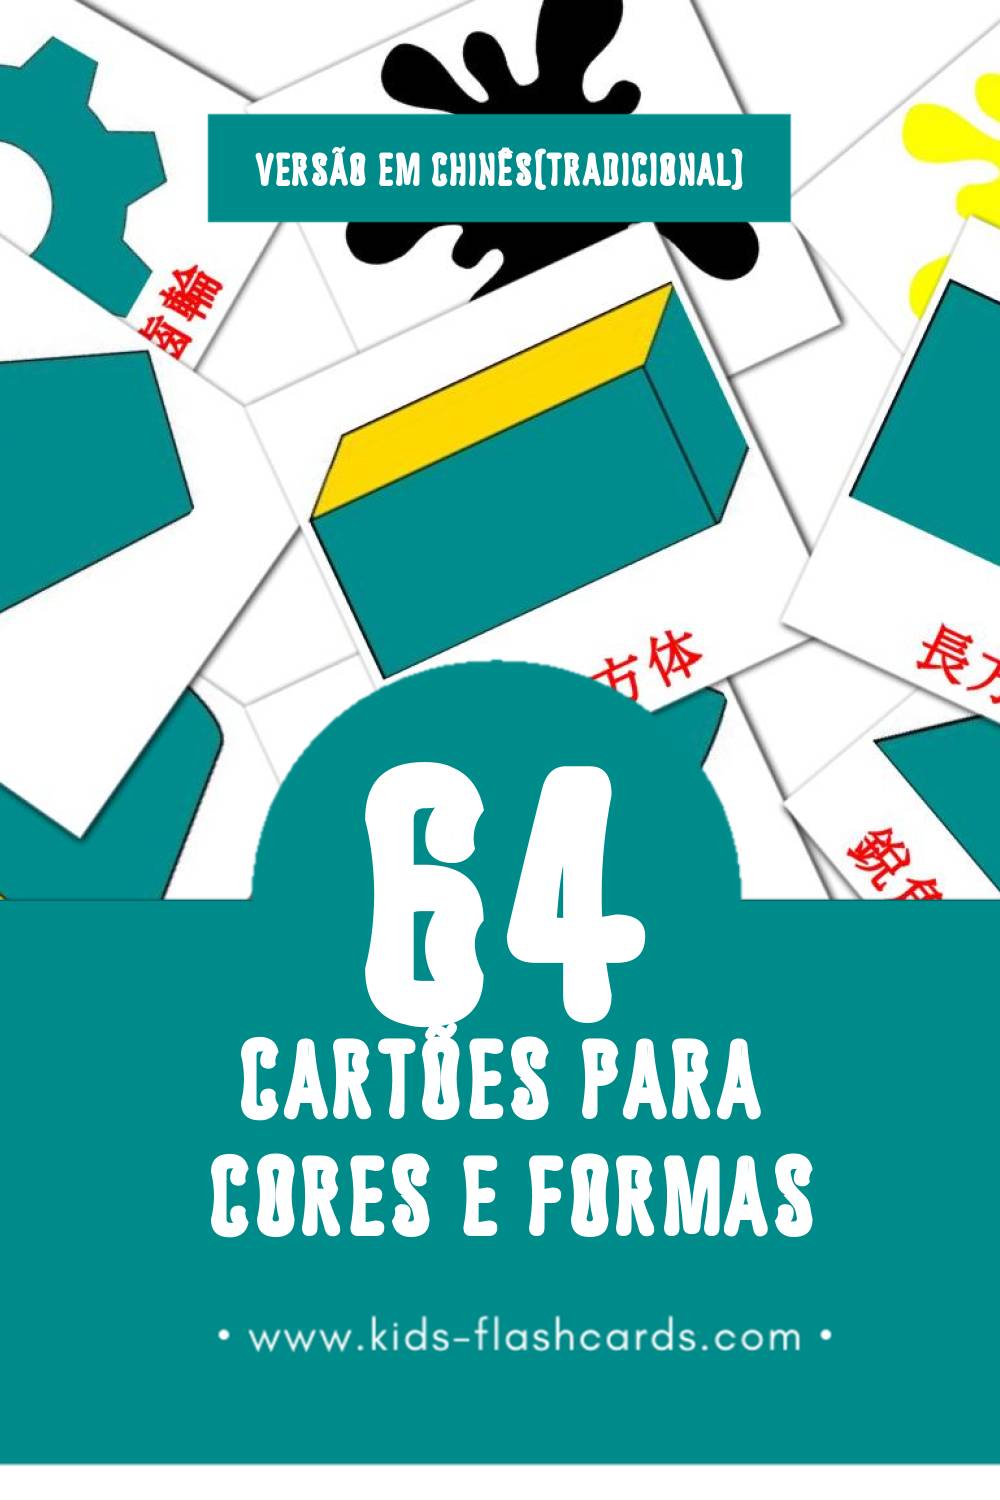 Flashcards de 数学 Visuais para Toddlers (64 cartões em Chinês(tradicional))